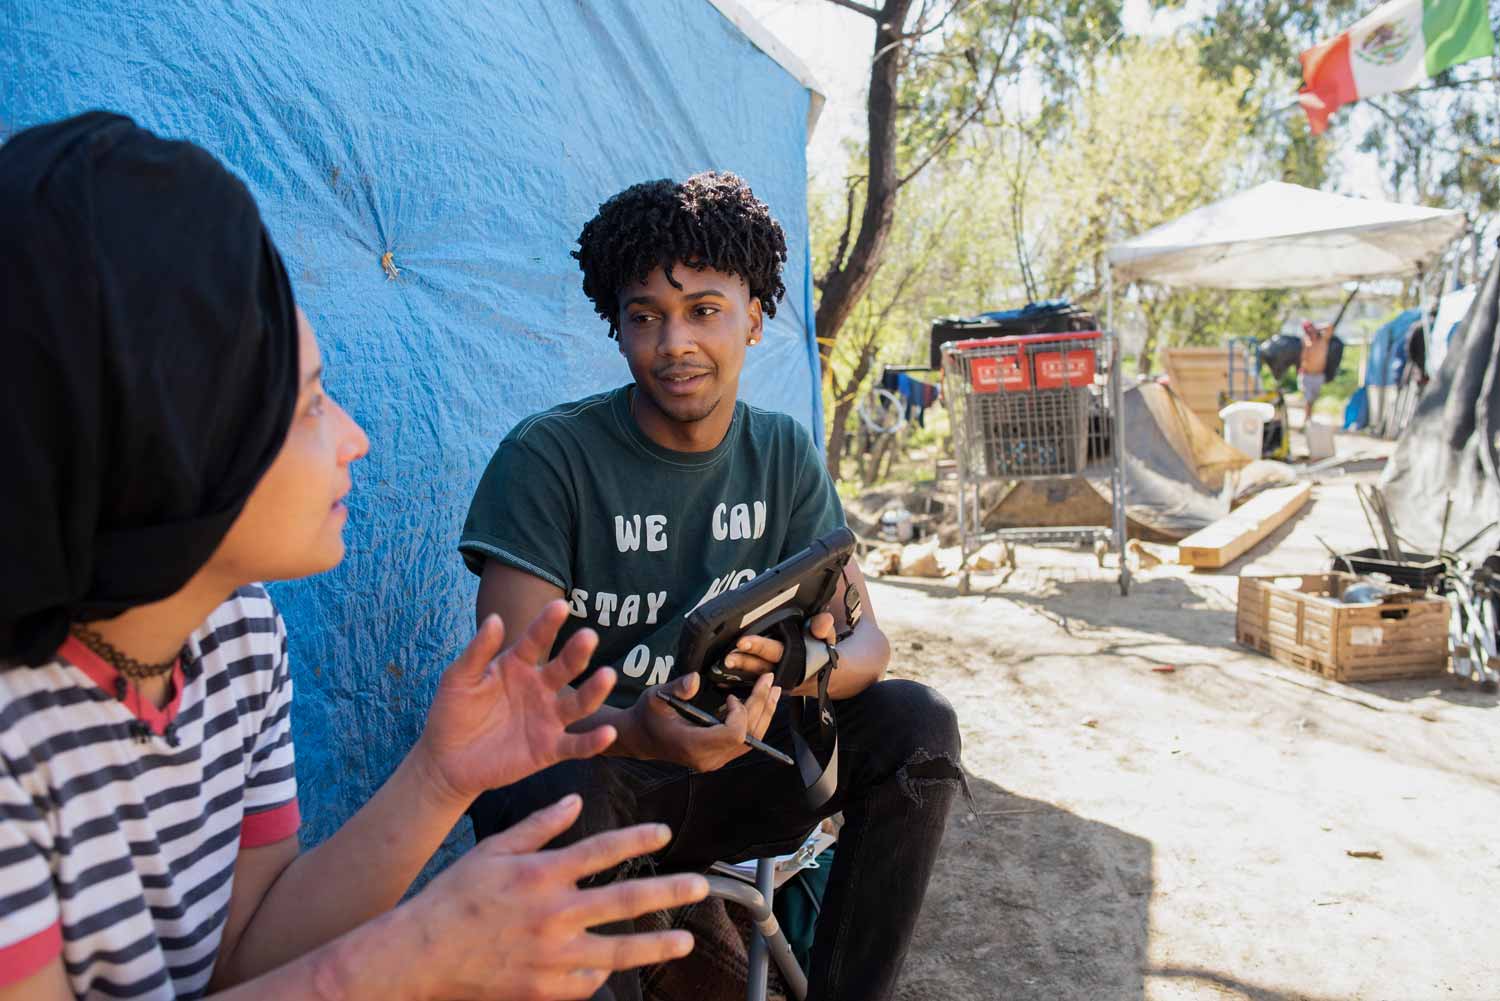 An African-American researcher interviews a woman at a homeless encampment.